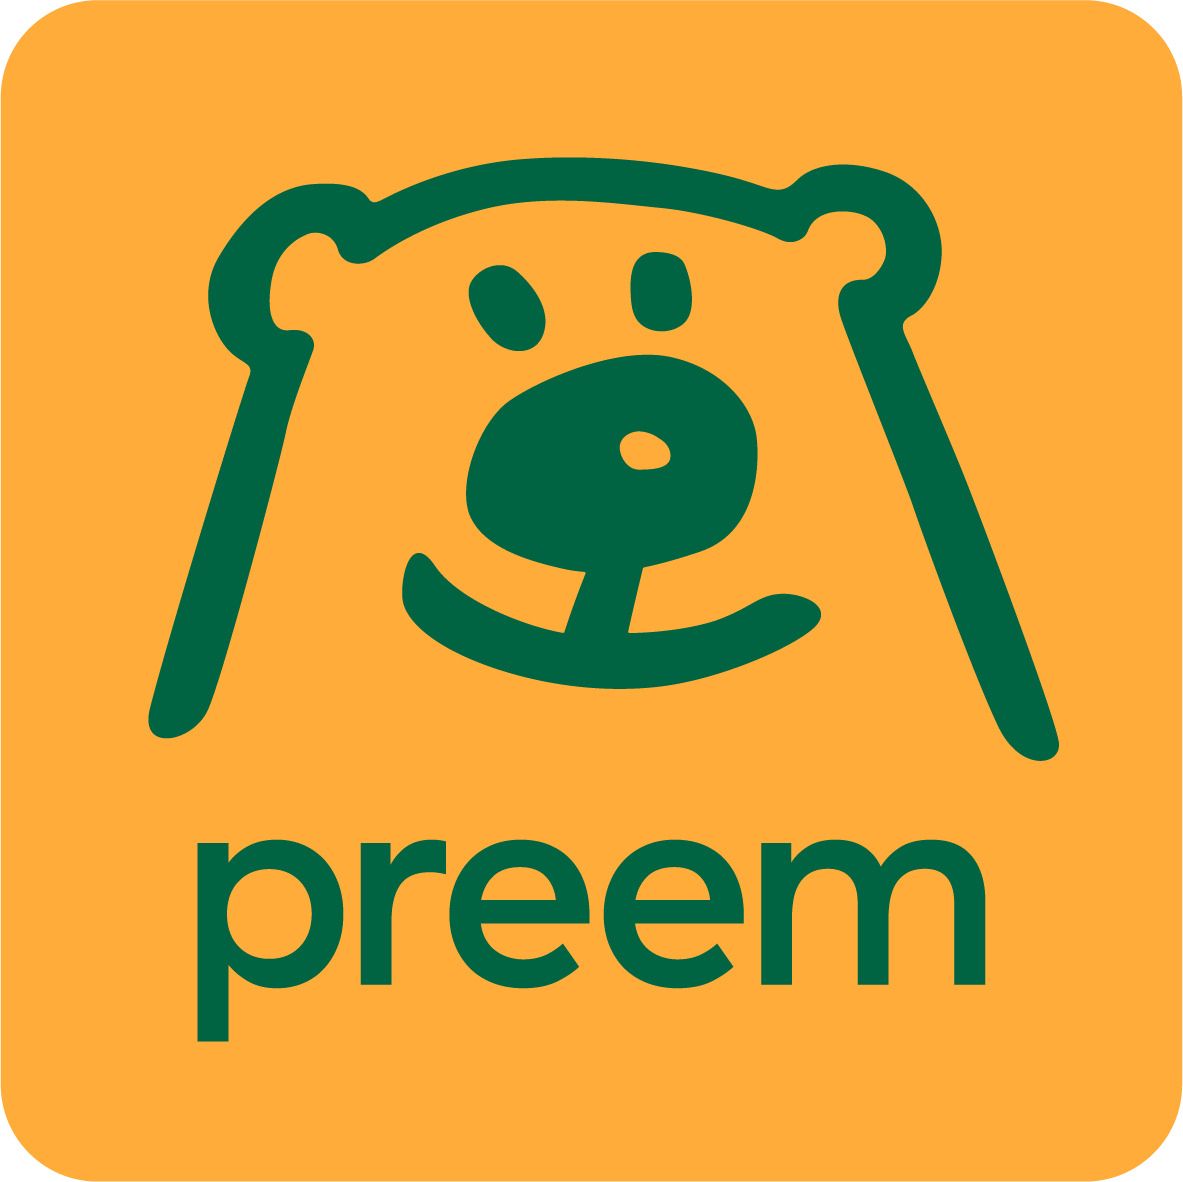 Projektledare/Projektingenjör inom mek och piping till Preem